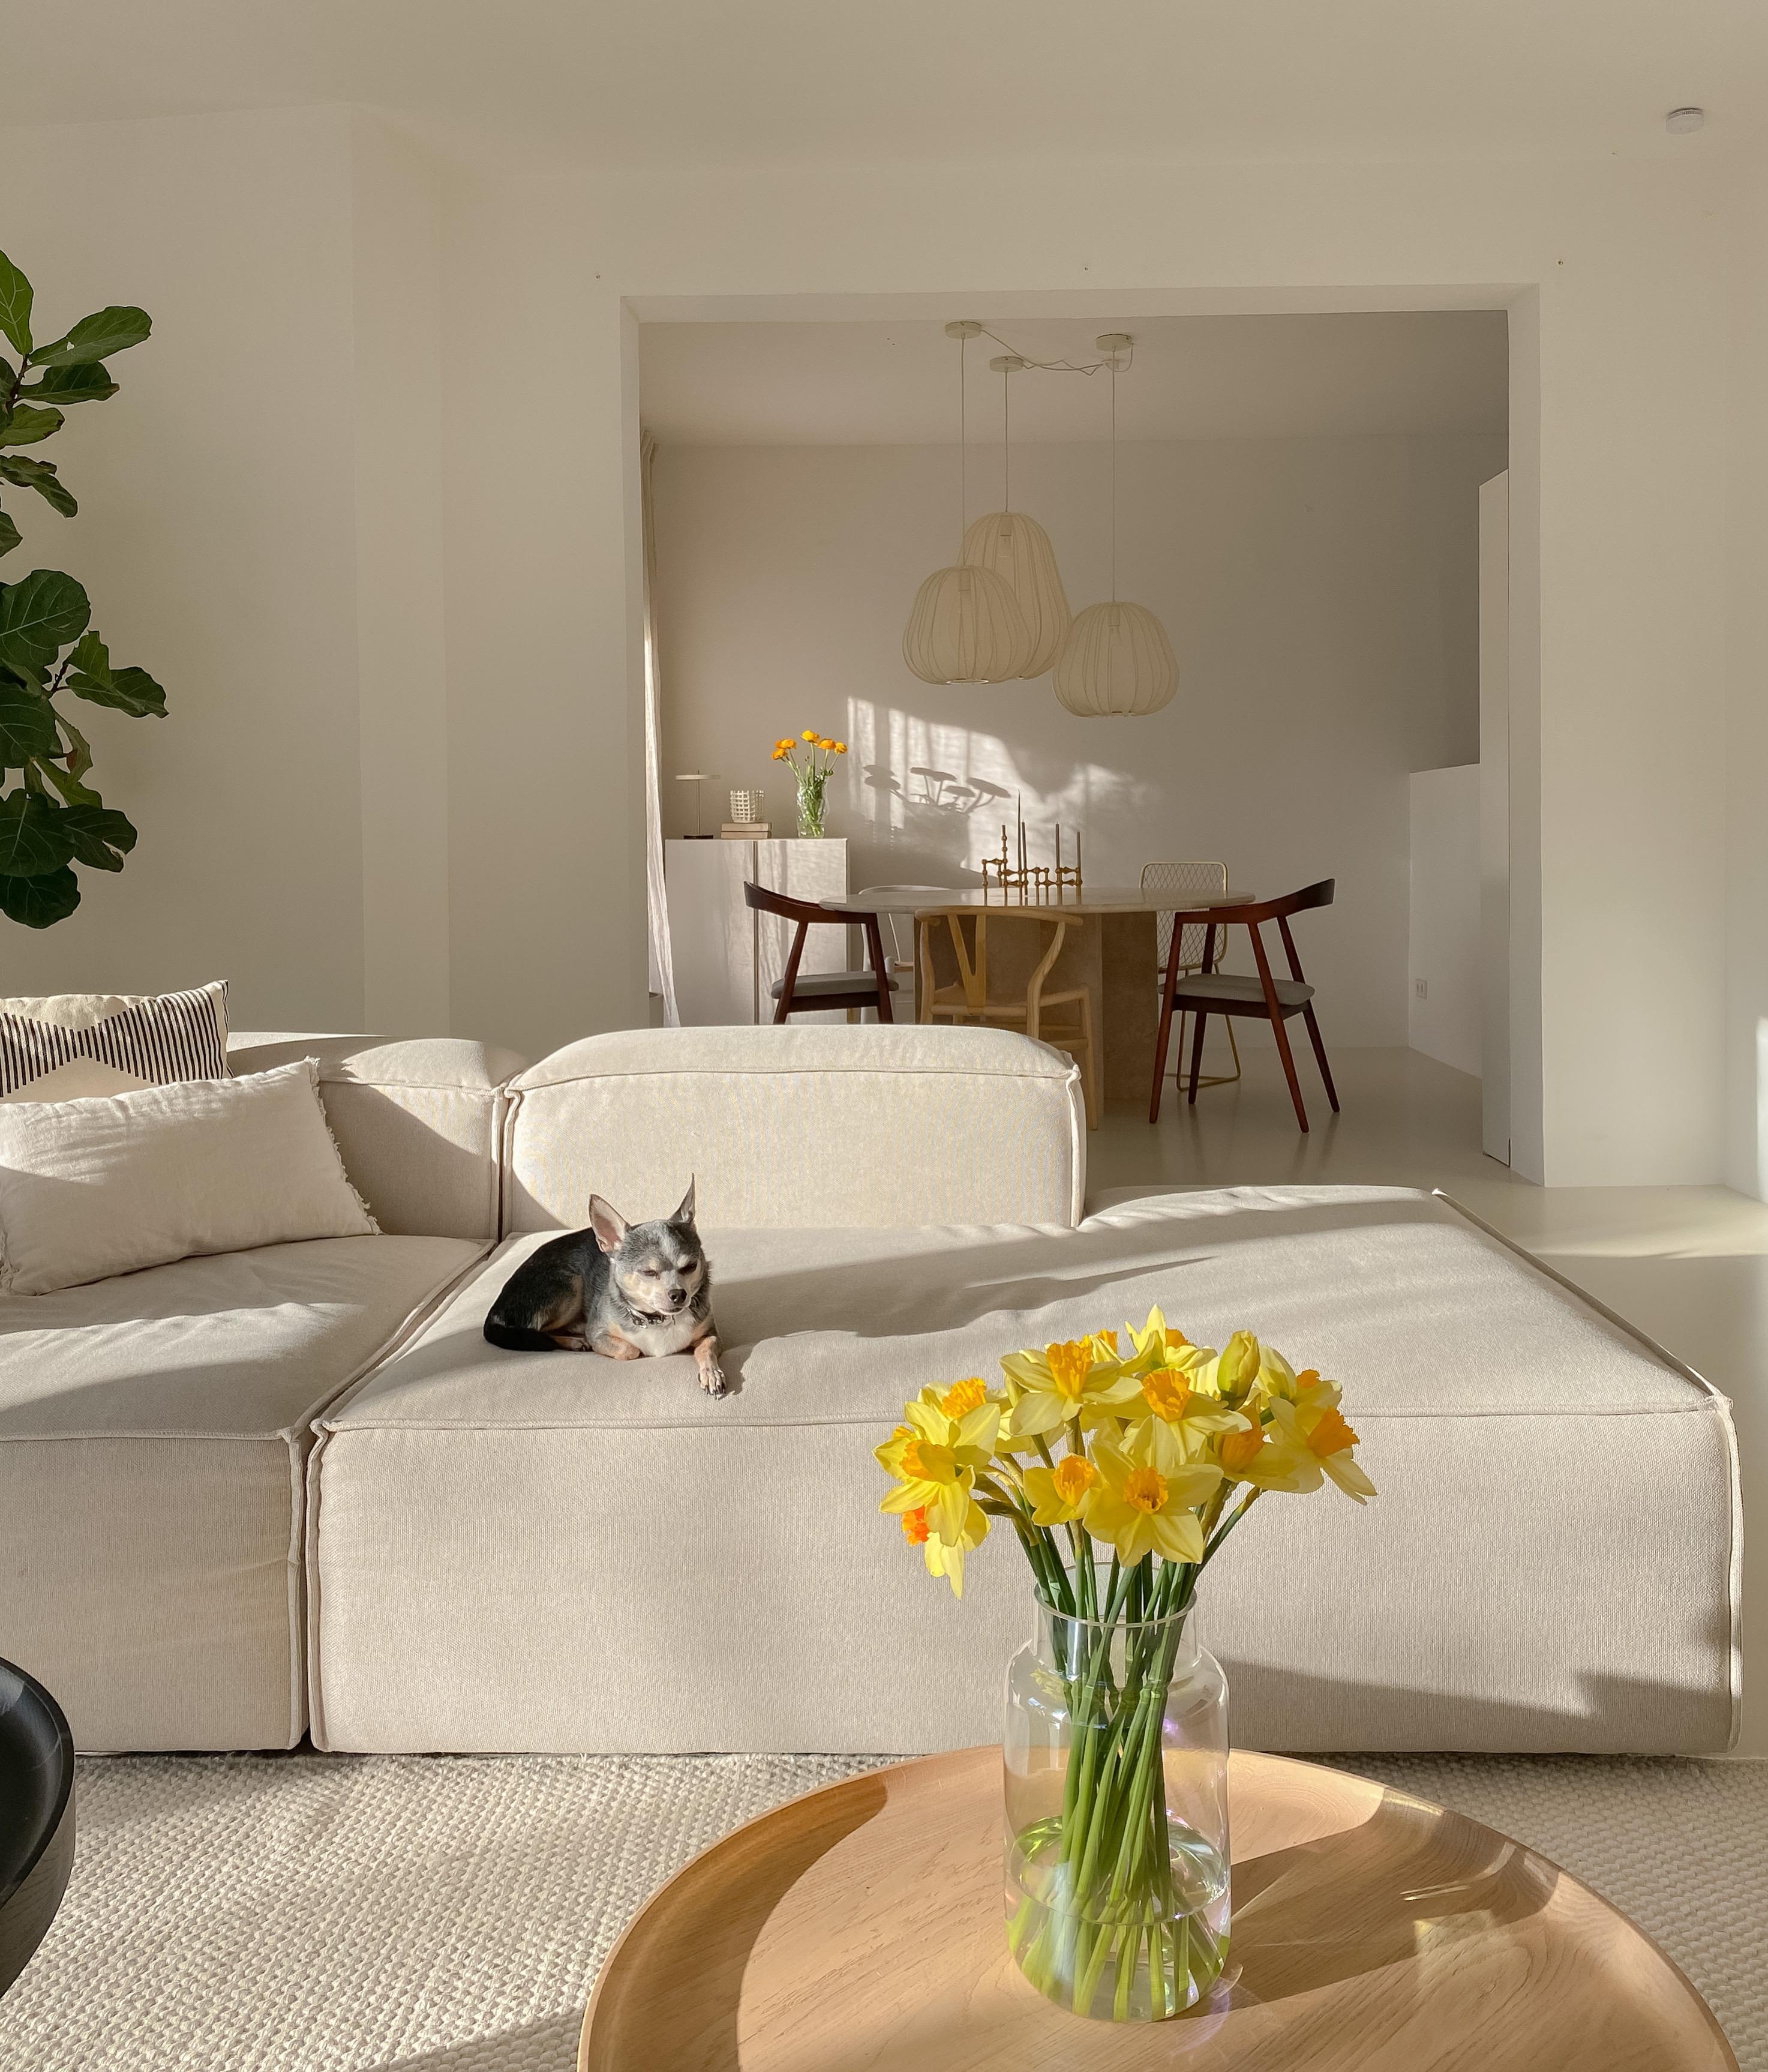 #wohnzimmer #sonnenschein #frühlingsblumen #beigeliving #couch #couchliebt #bungalow #esszimmer 